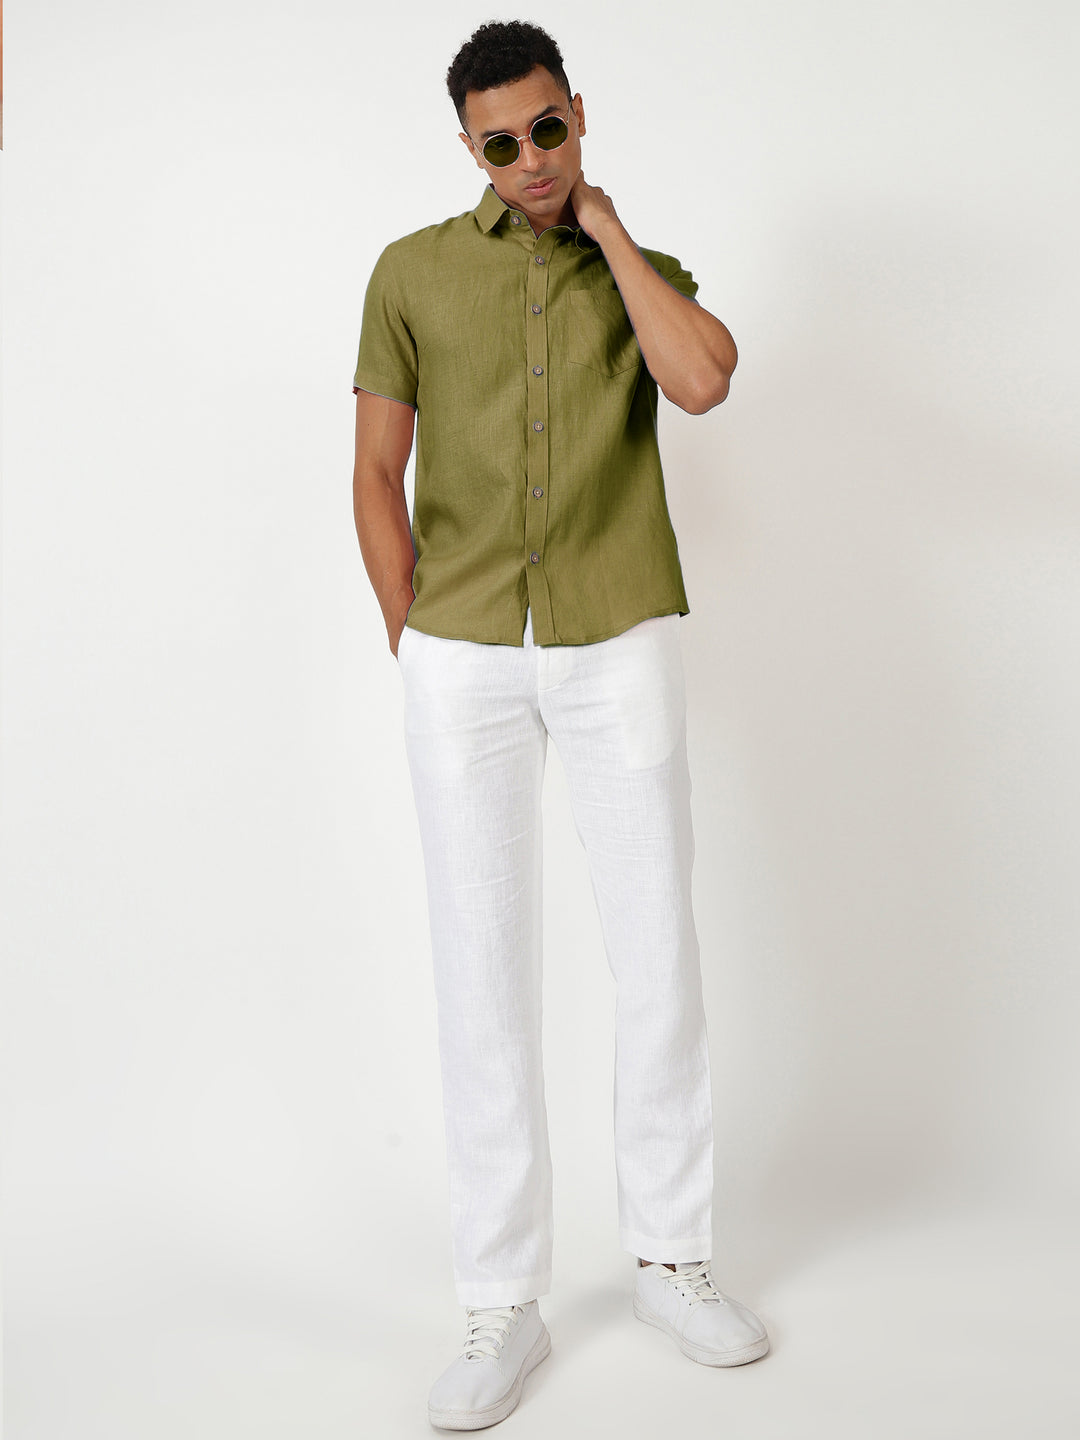 Harvey - Pure Linen Half Sleeve Shirt - Sap Green